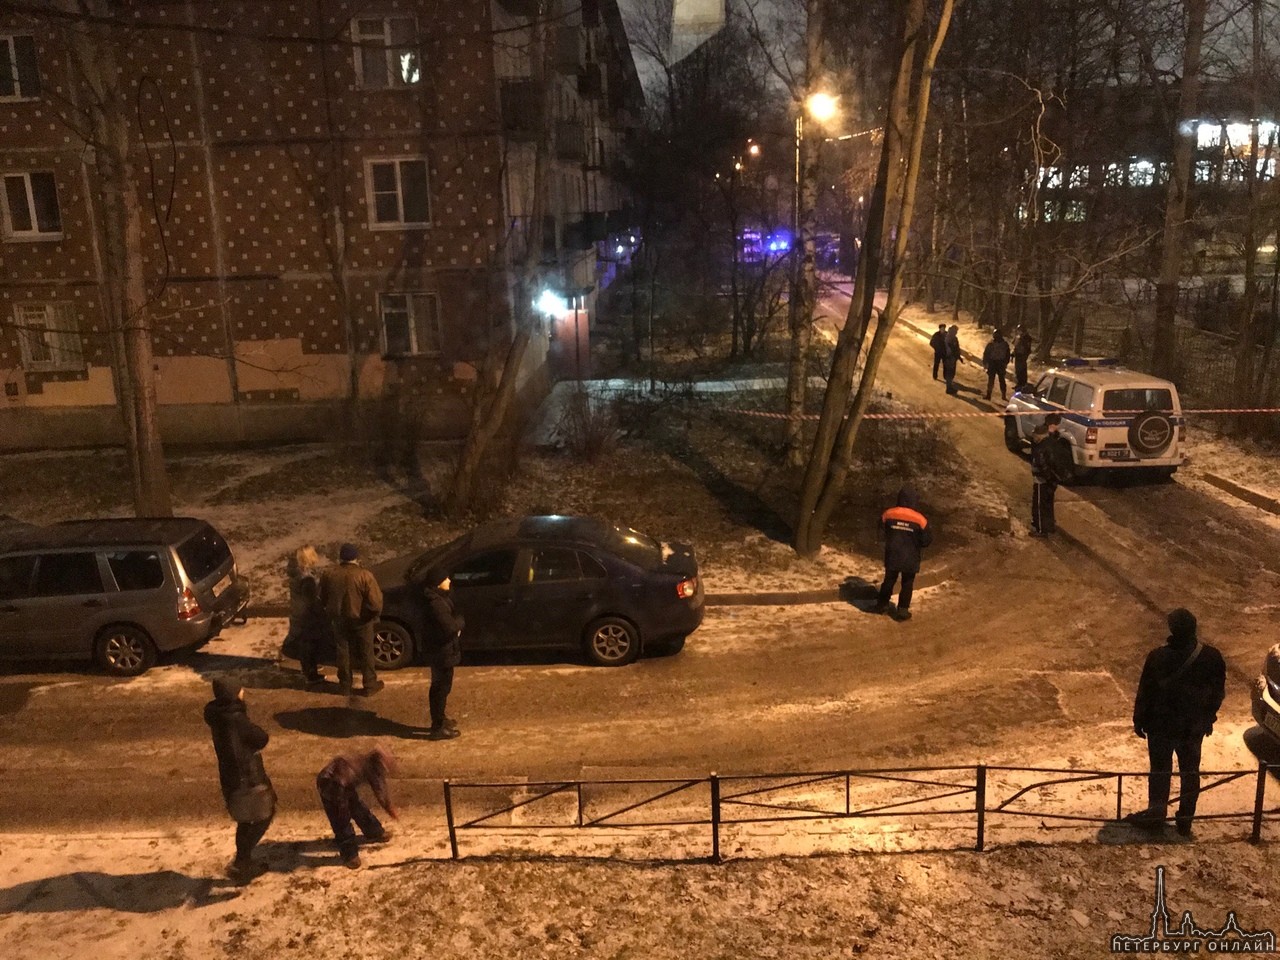 Закрыт проезд во дворах у дома 38/7 по улице Карпинского. Всё оцепили, говорят угроза взрыва.